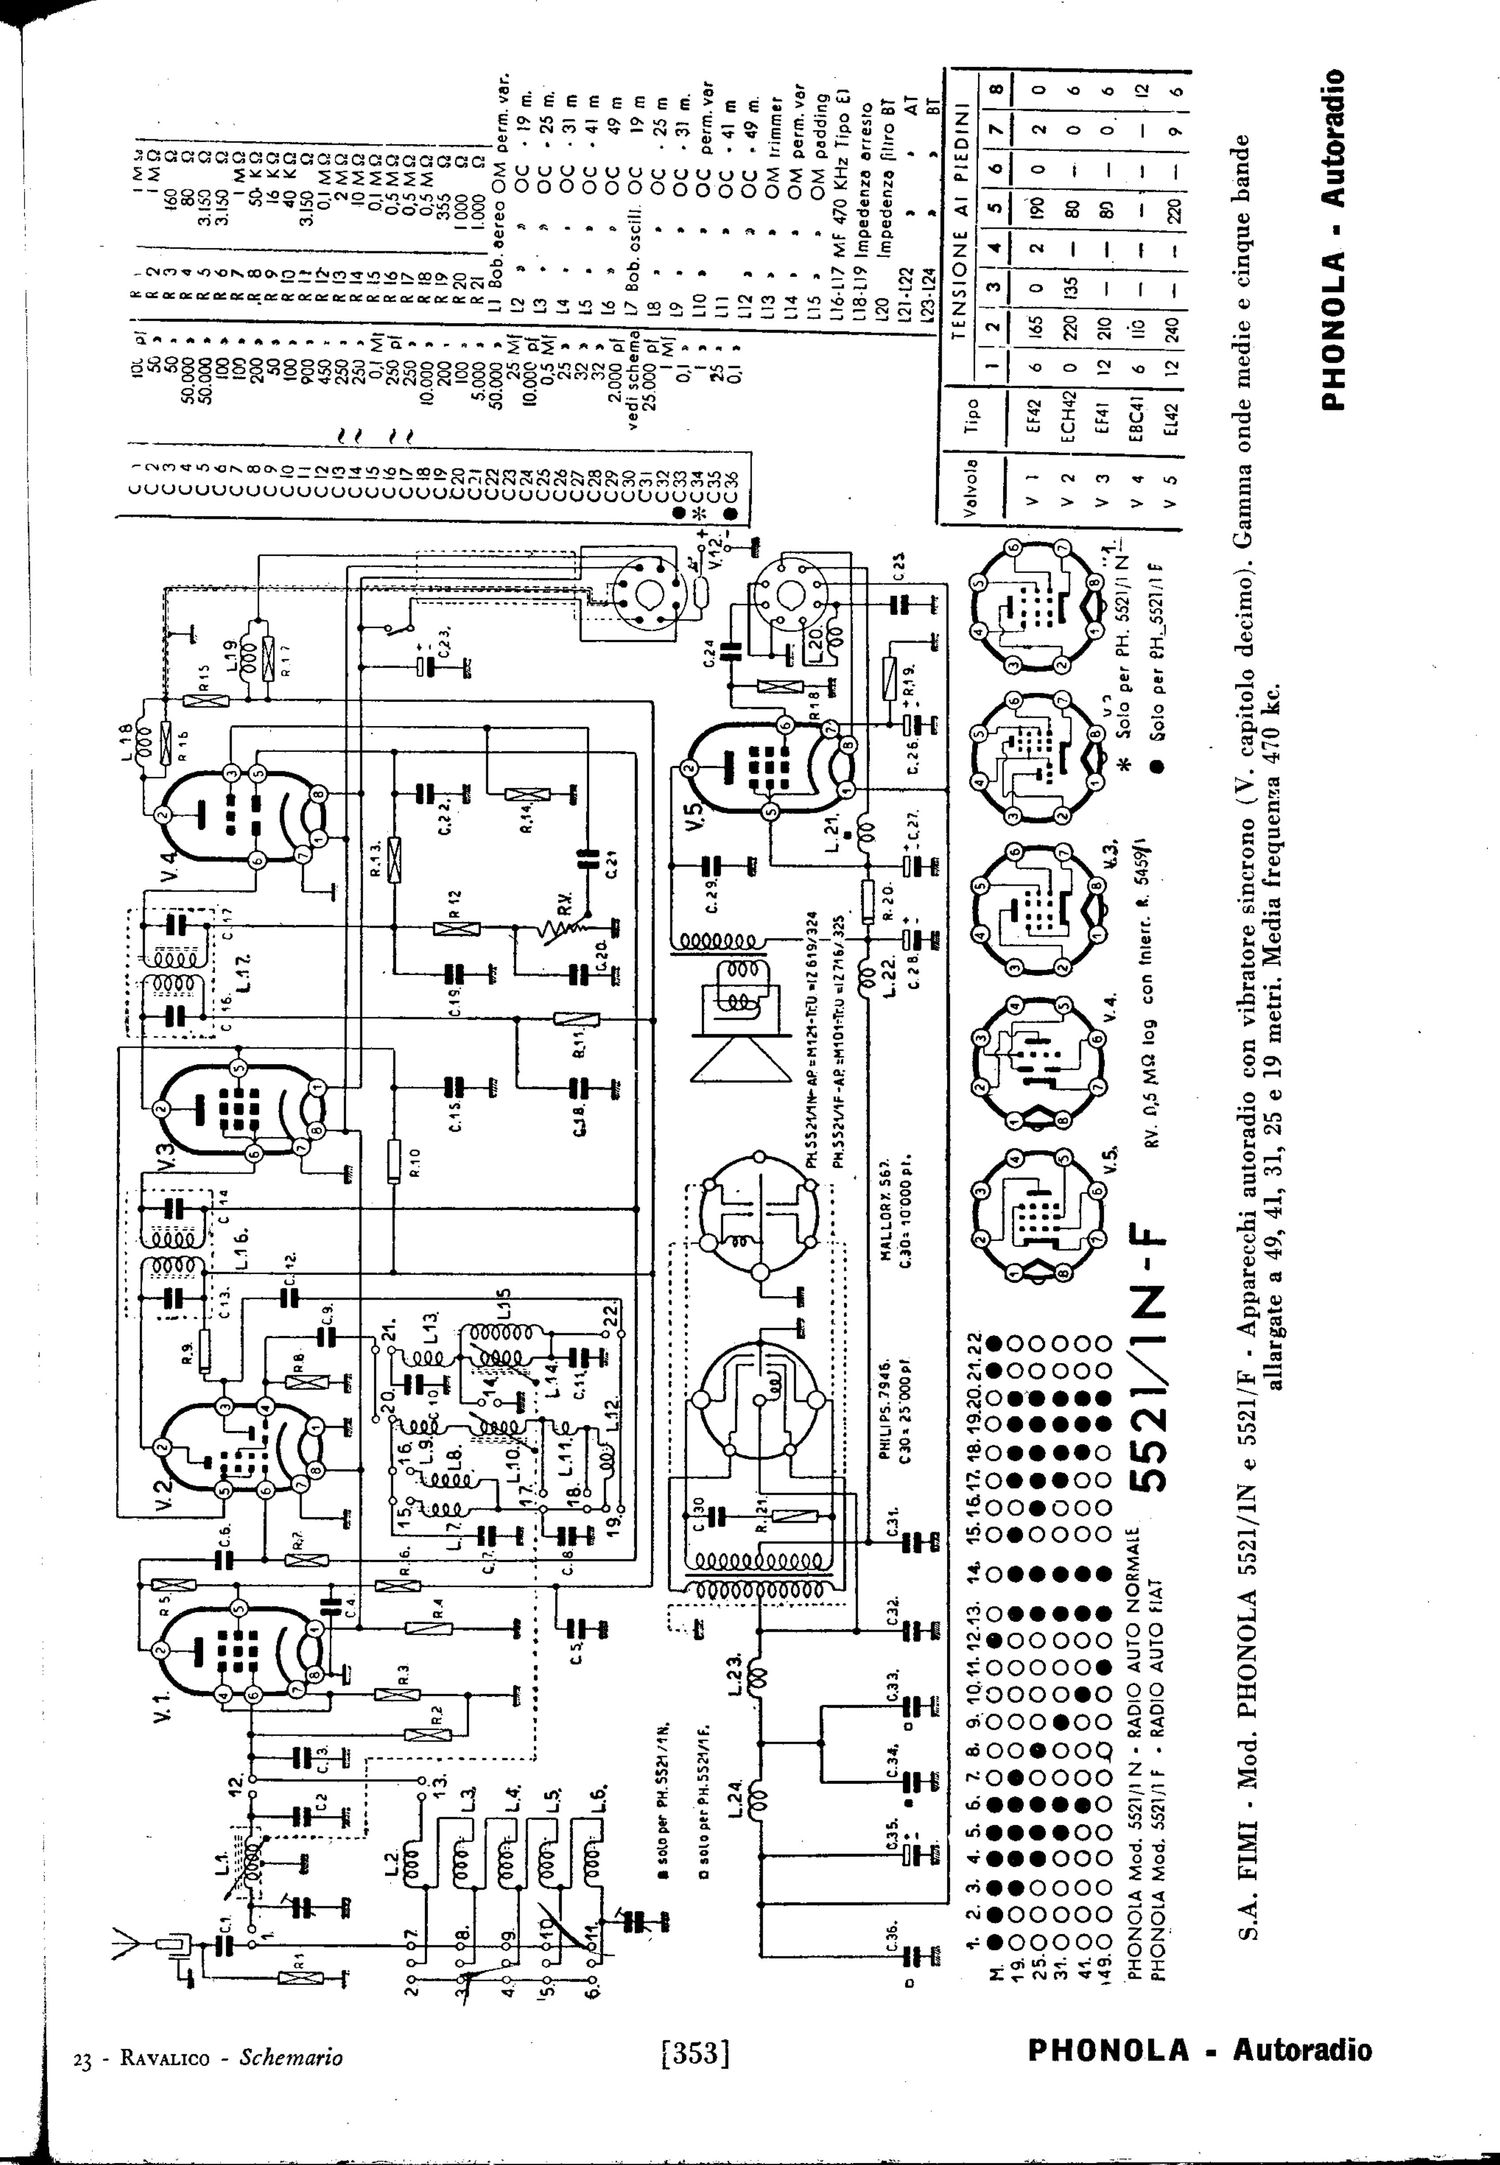 phonola autoradio schematic